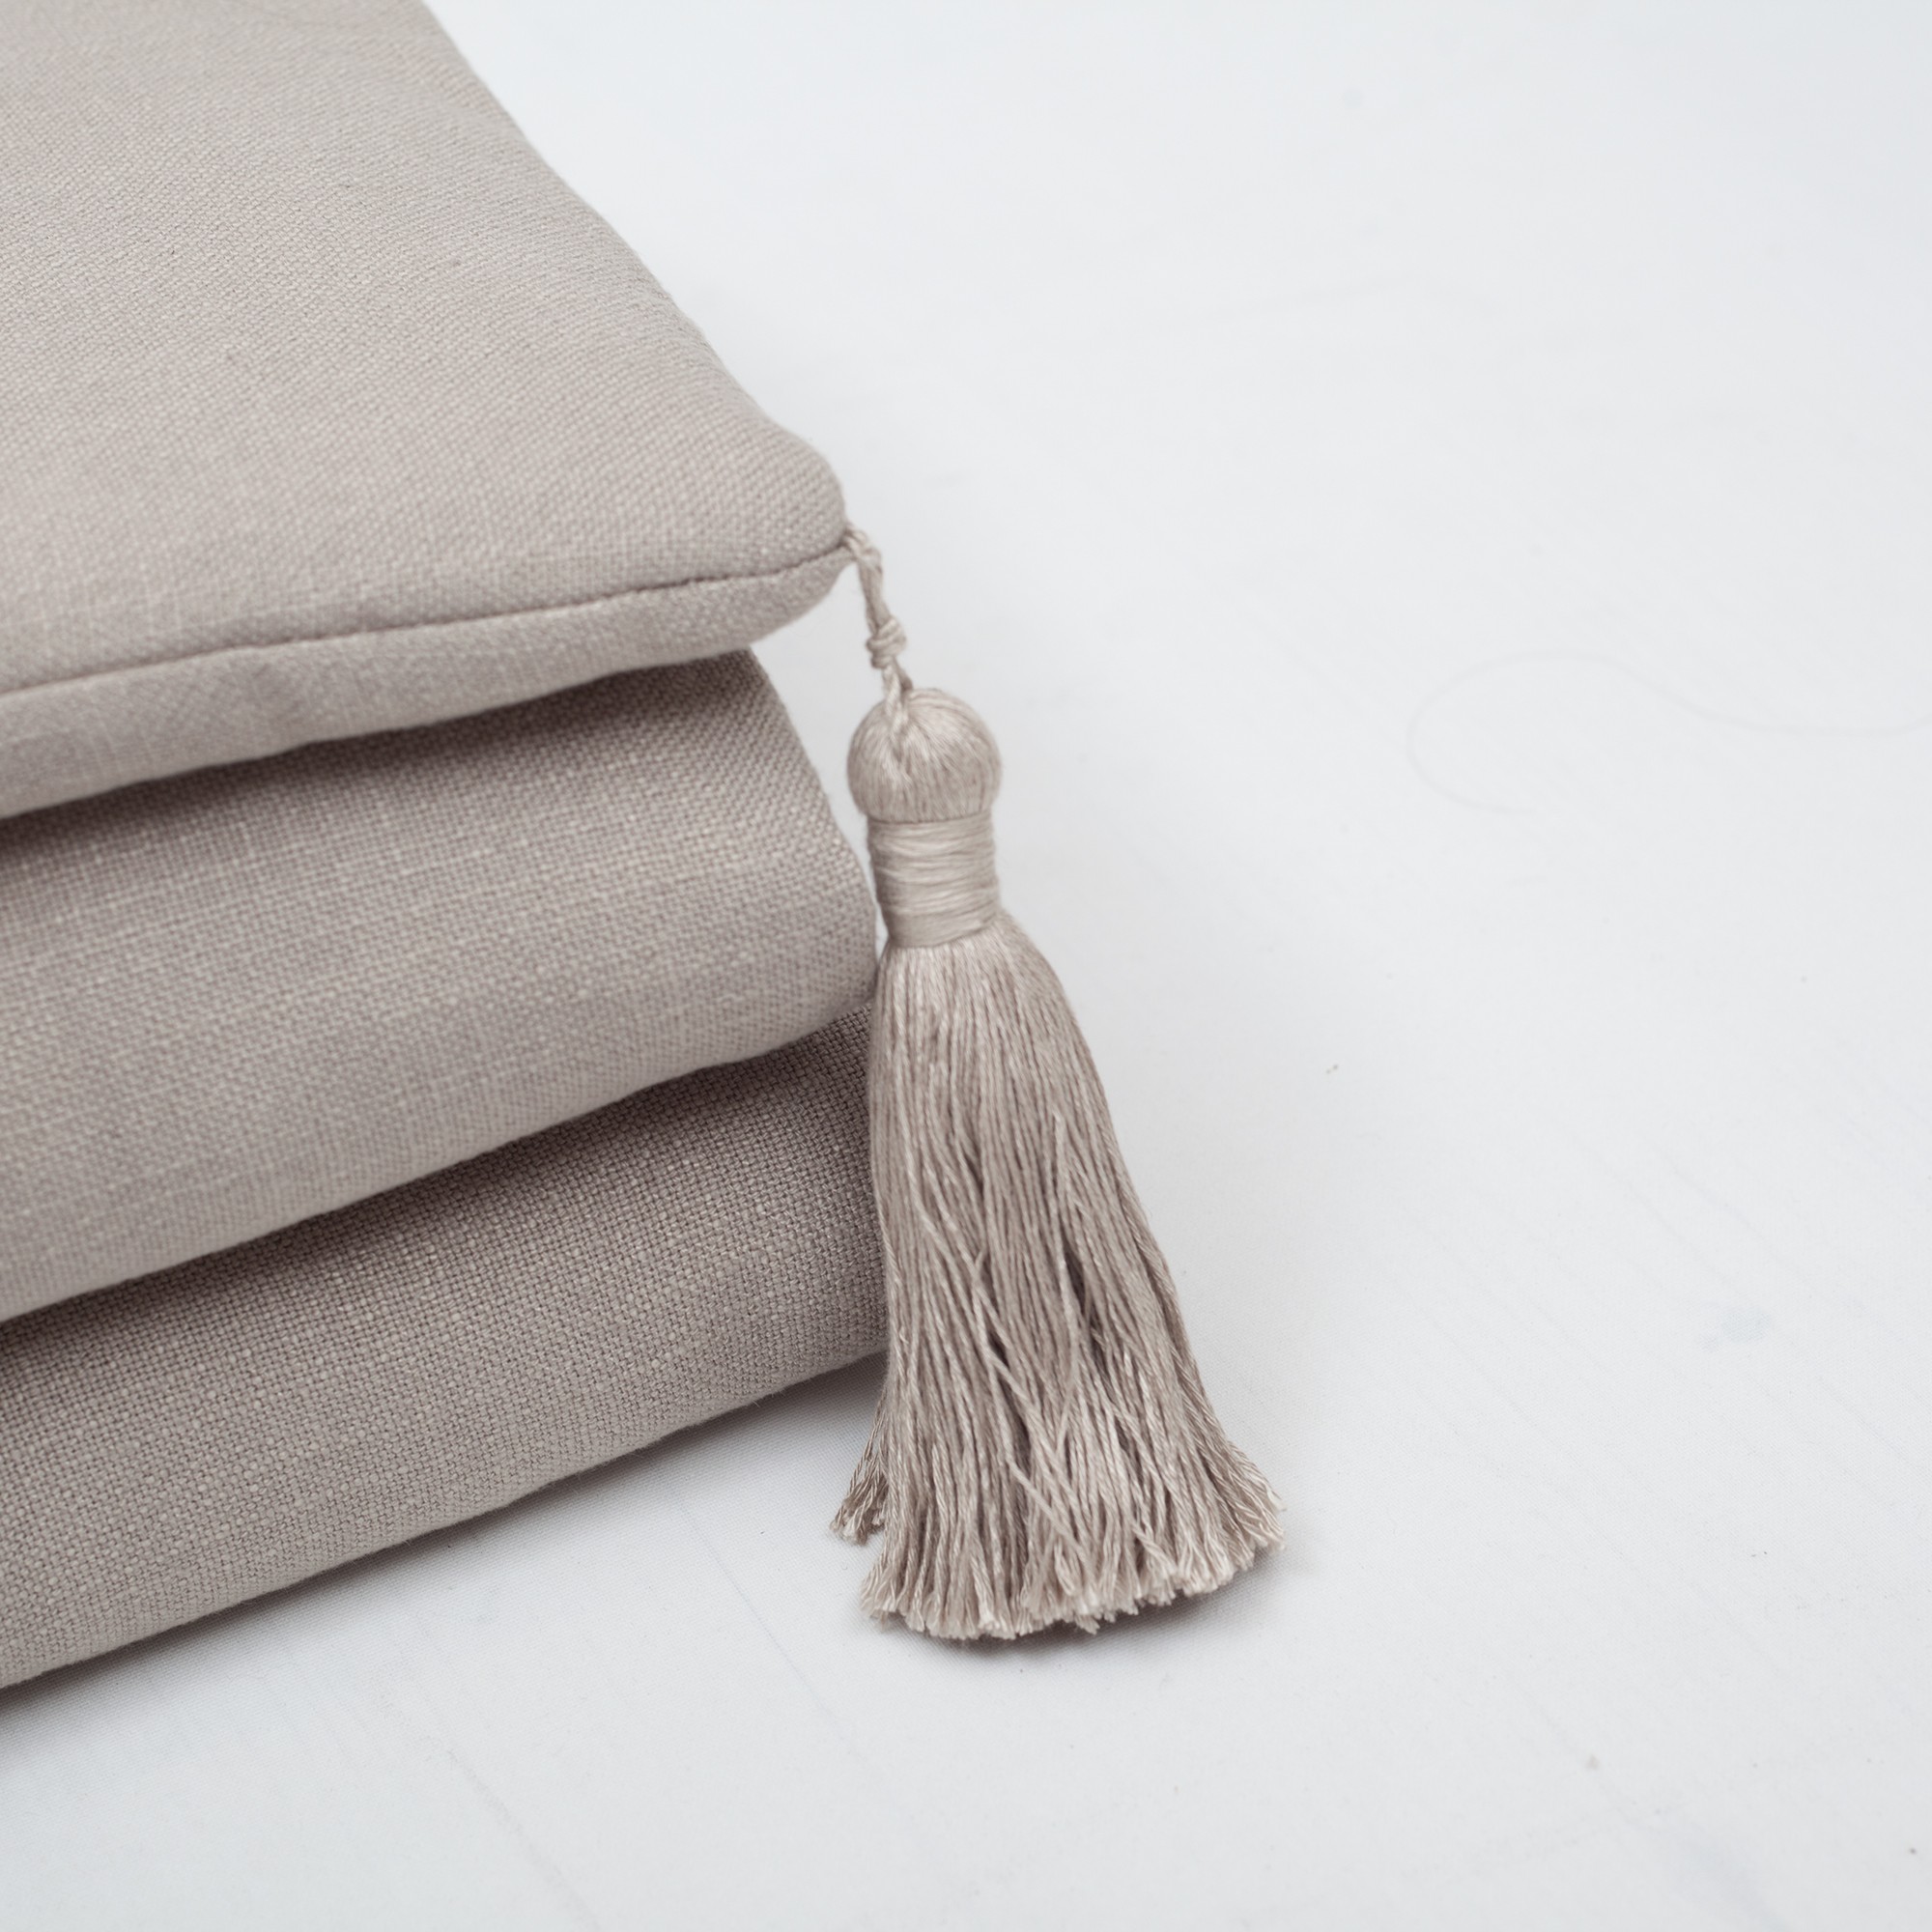 "Loom" Linen Tasseled Bed Runner + 6 Pillow Set Surya Capri - Orange (Cover Only)